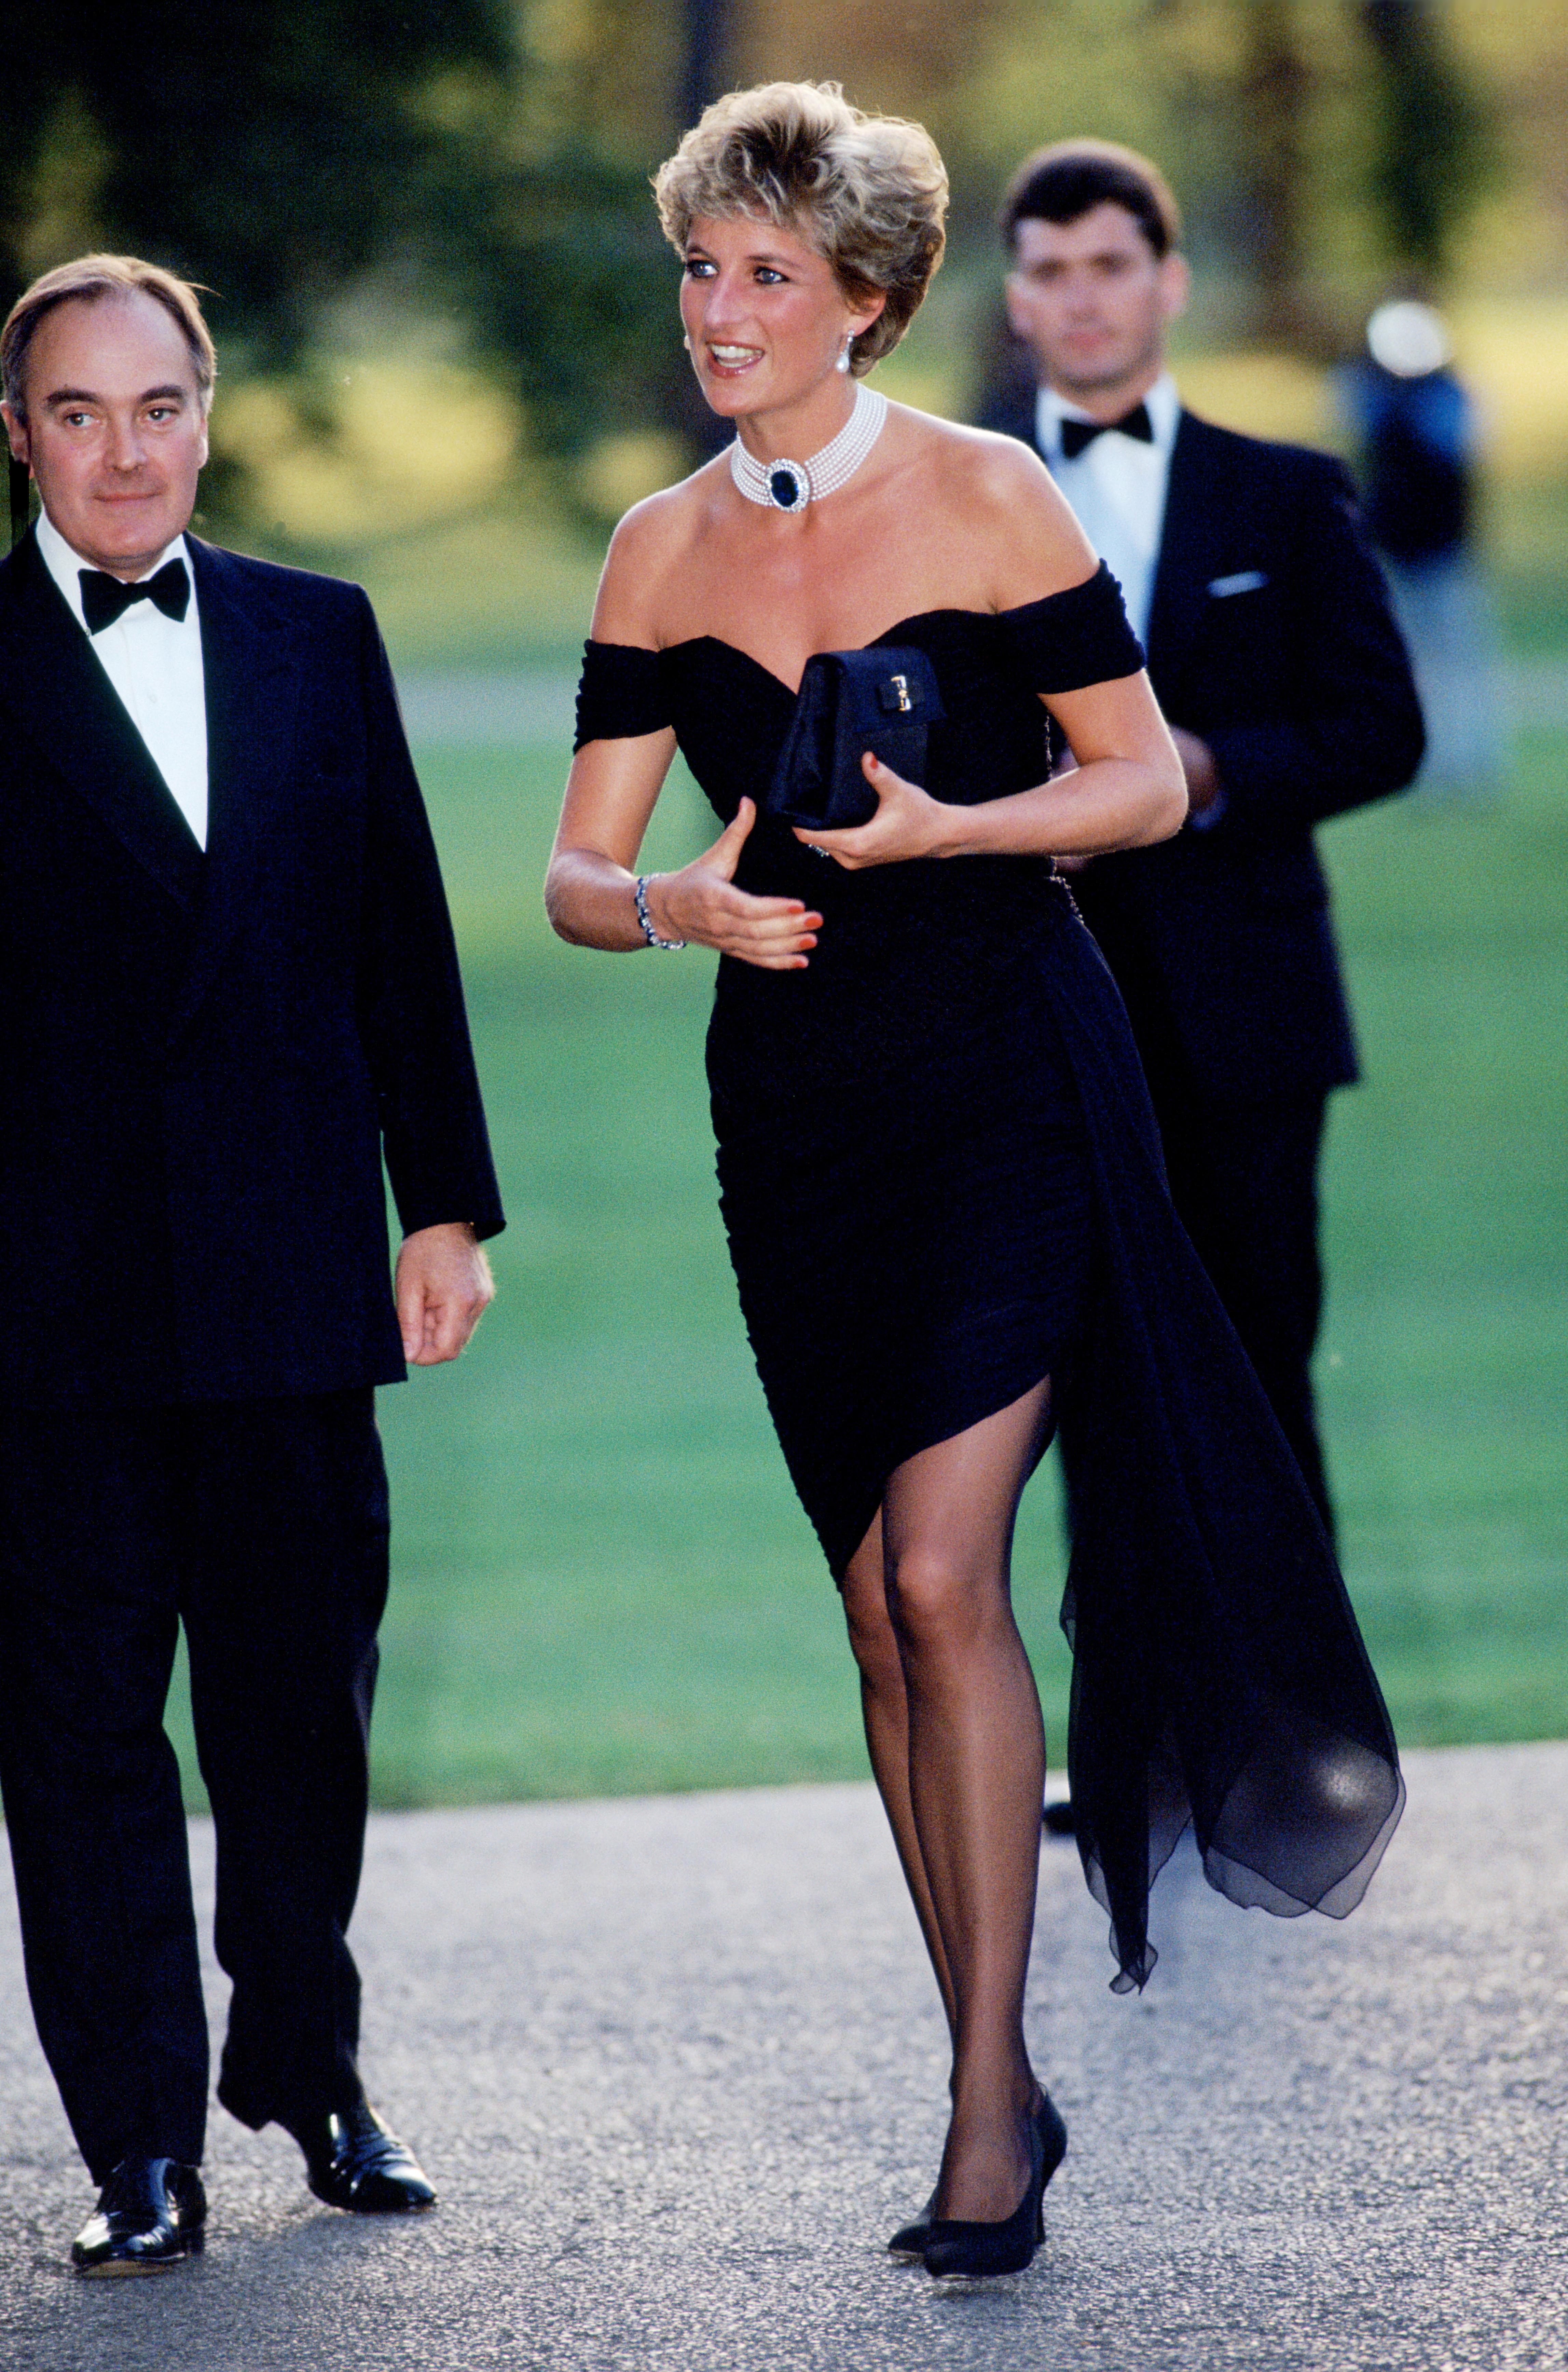 Straight Diana in the horrible black 'revenge dress'